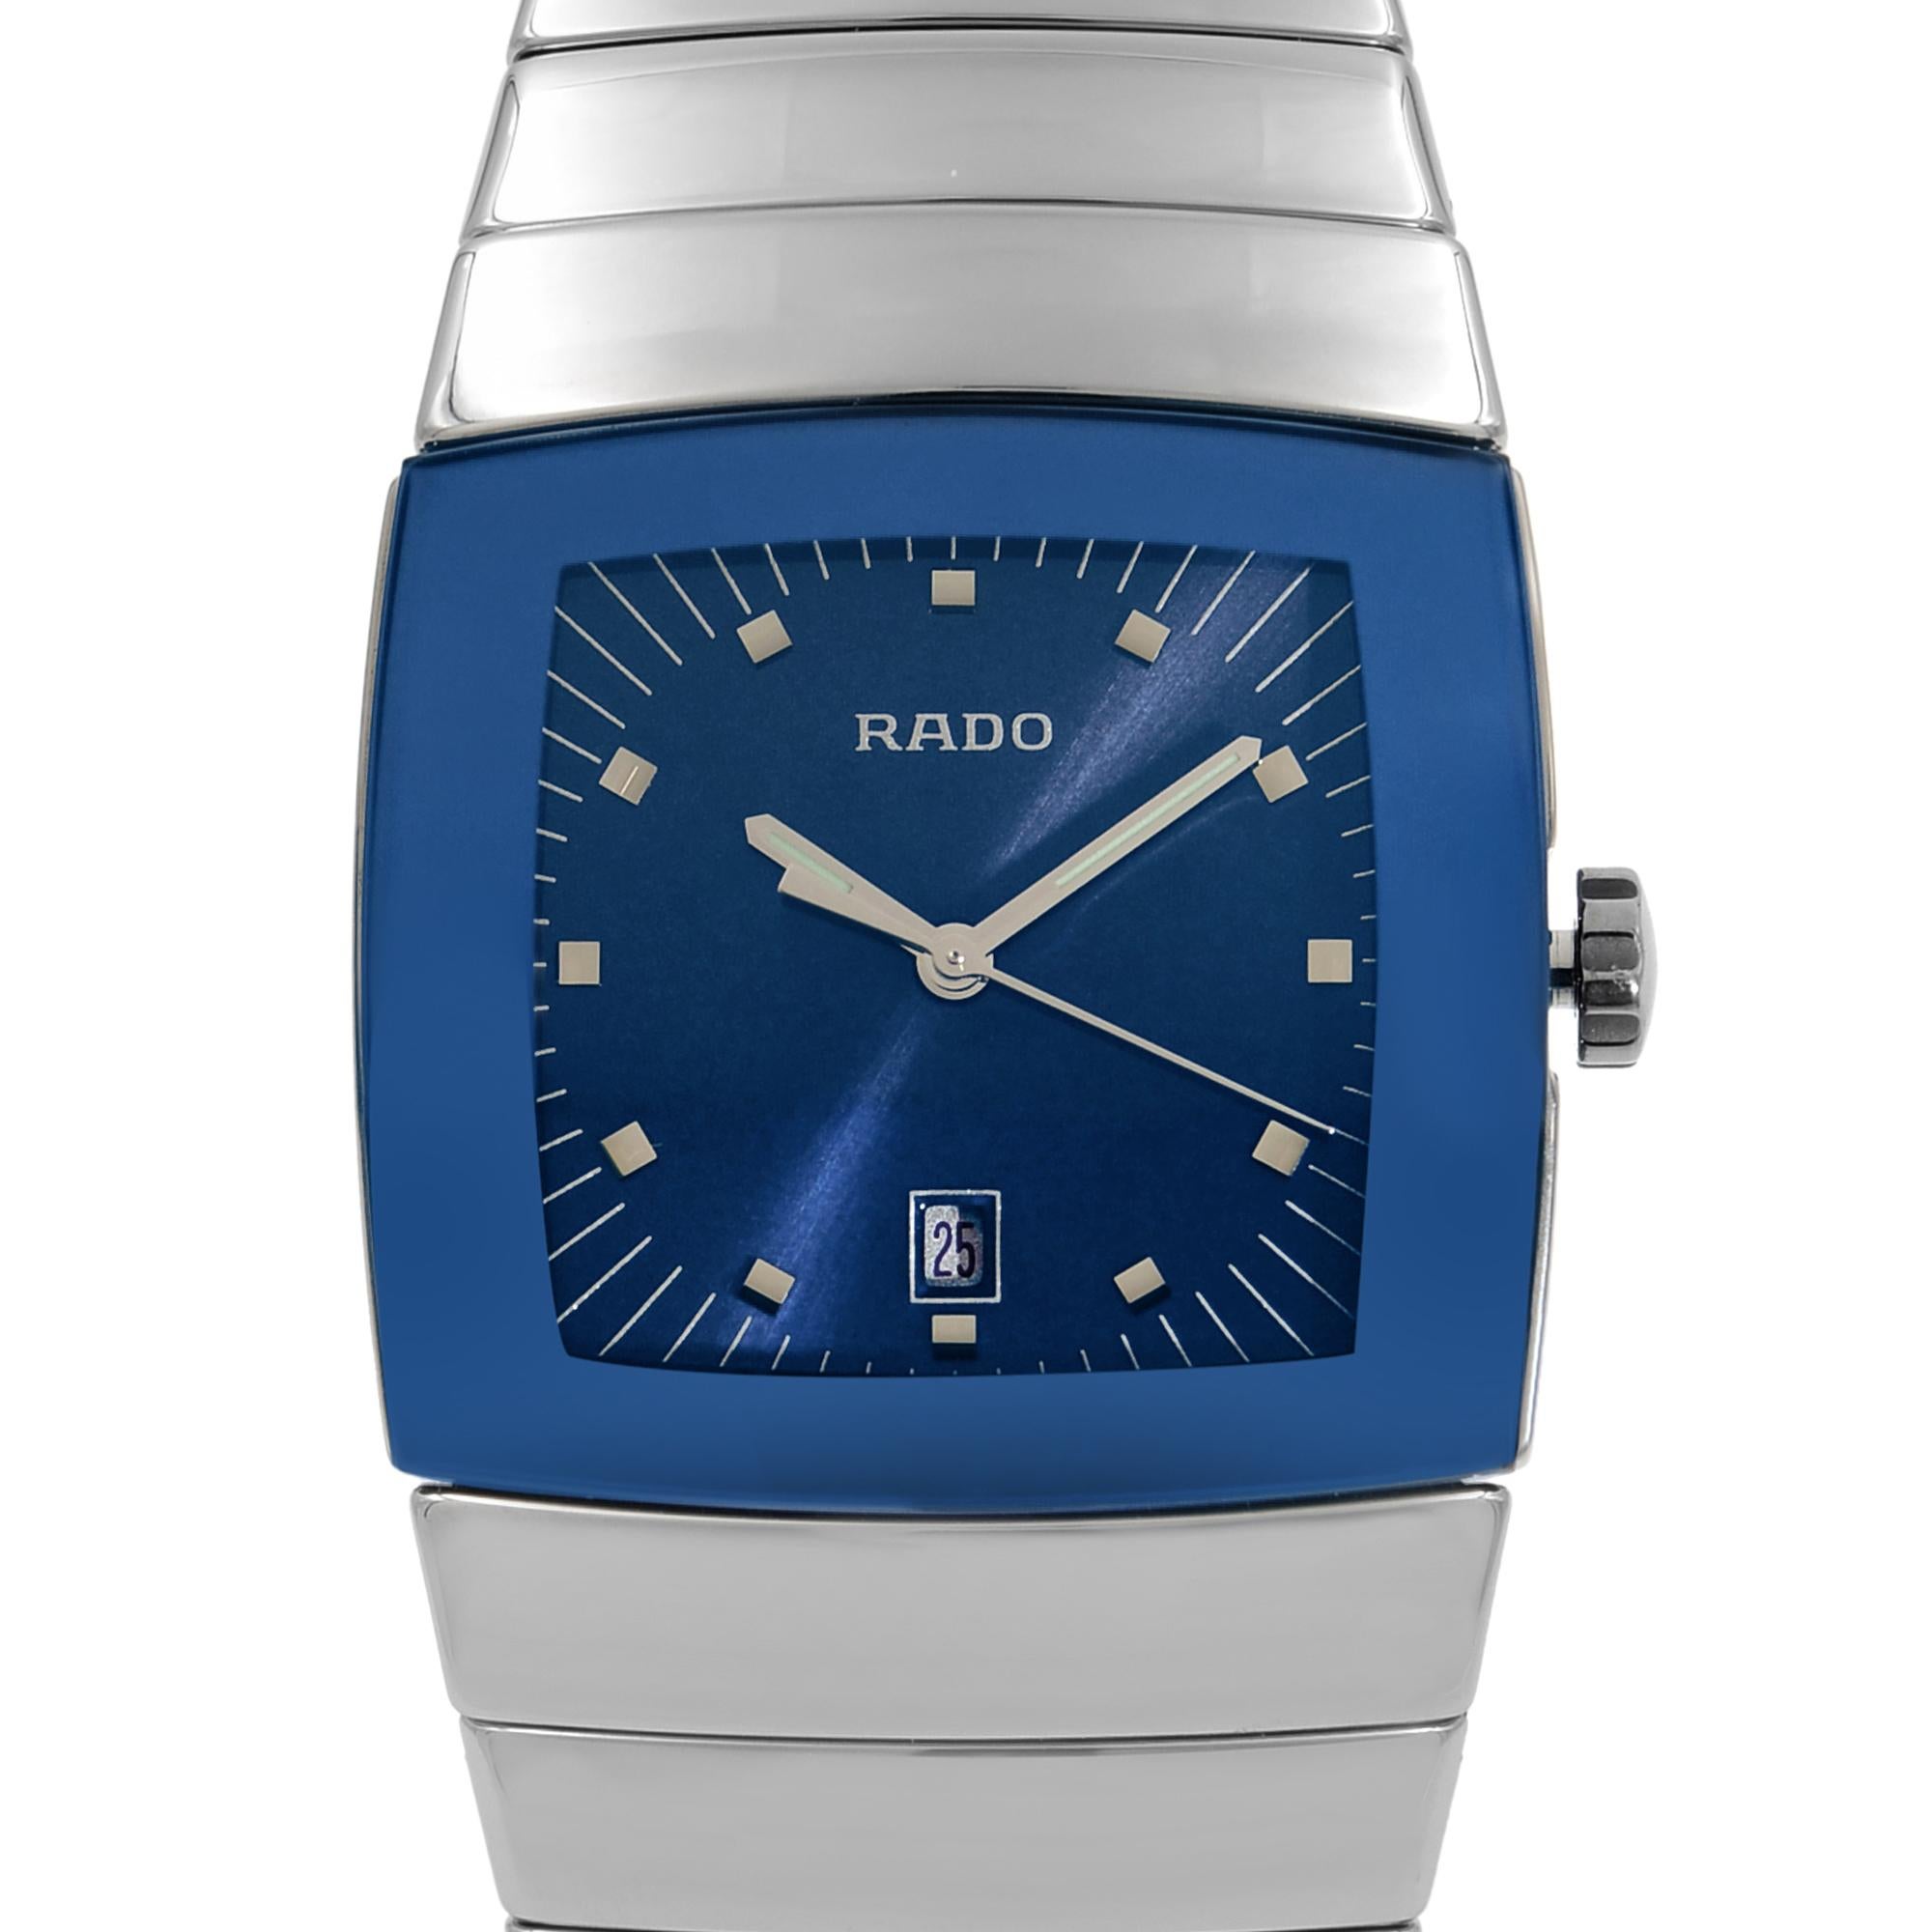 Rado Sintra High Tech Ceramic Blue Dial Quartz Men’s Watch R13810202